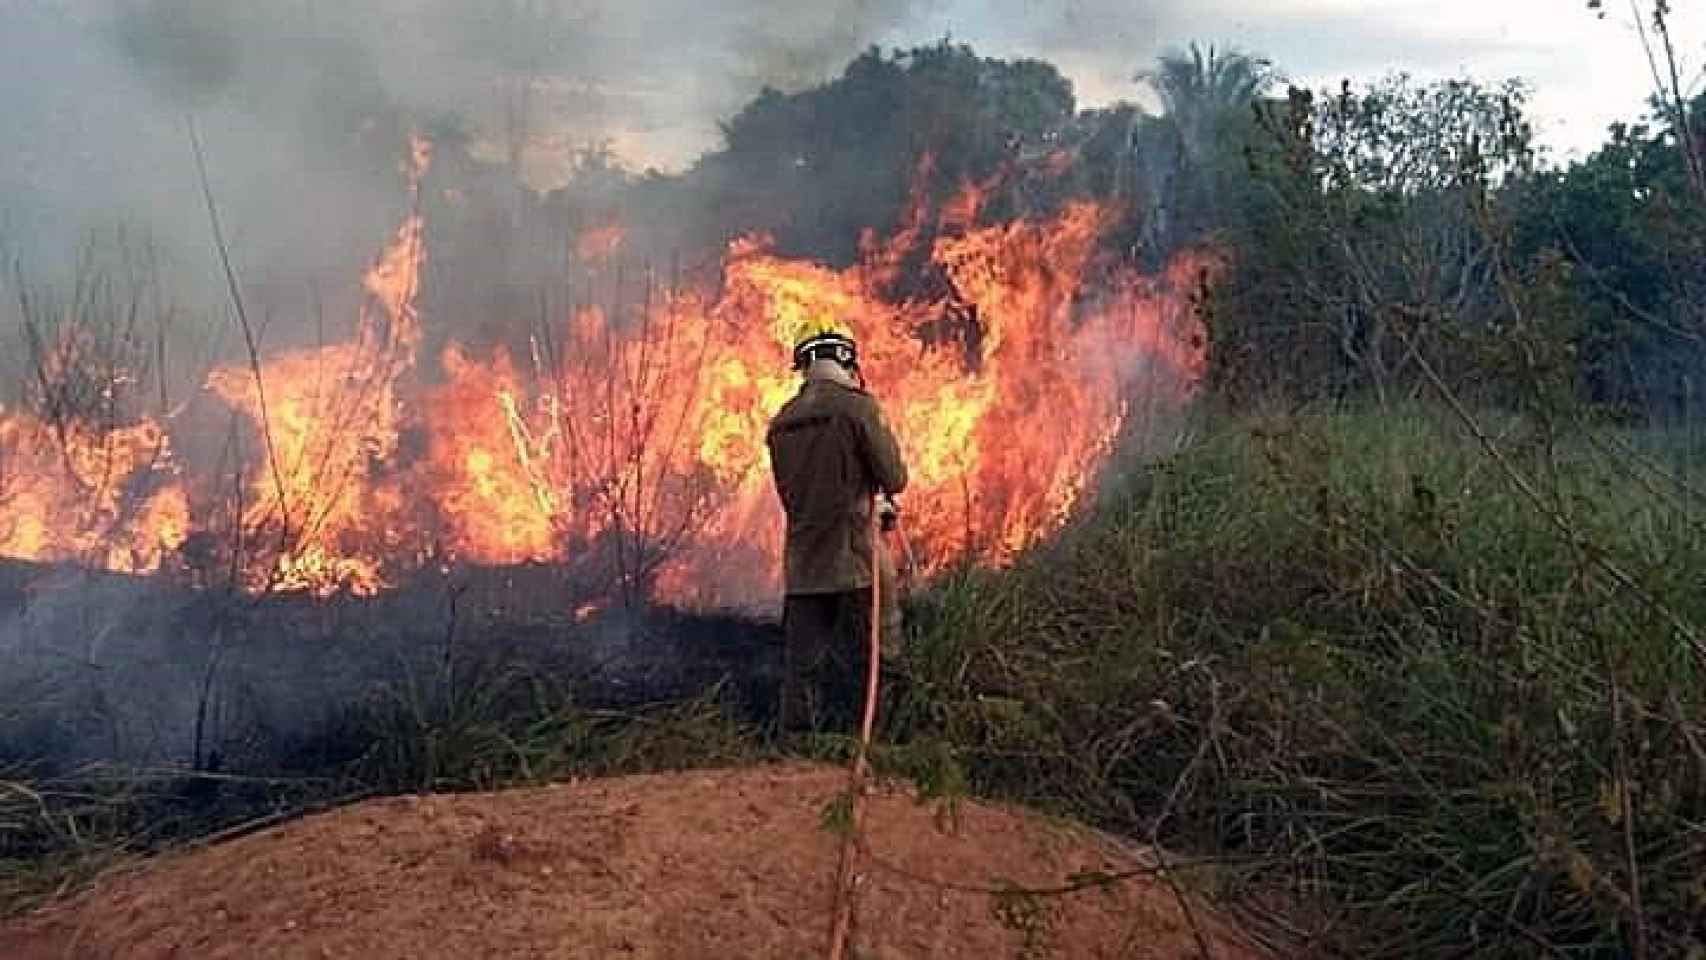 Fotografía cedida por los Bomberos del estado de Acre que muestra a miembros de los bomberos mientras combaten un incendio este sábado.